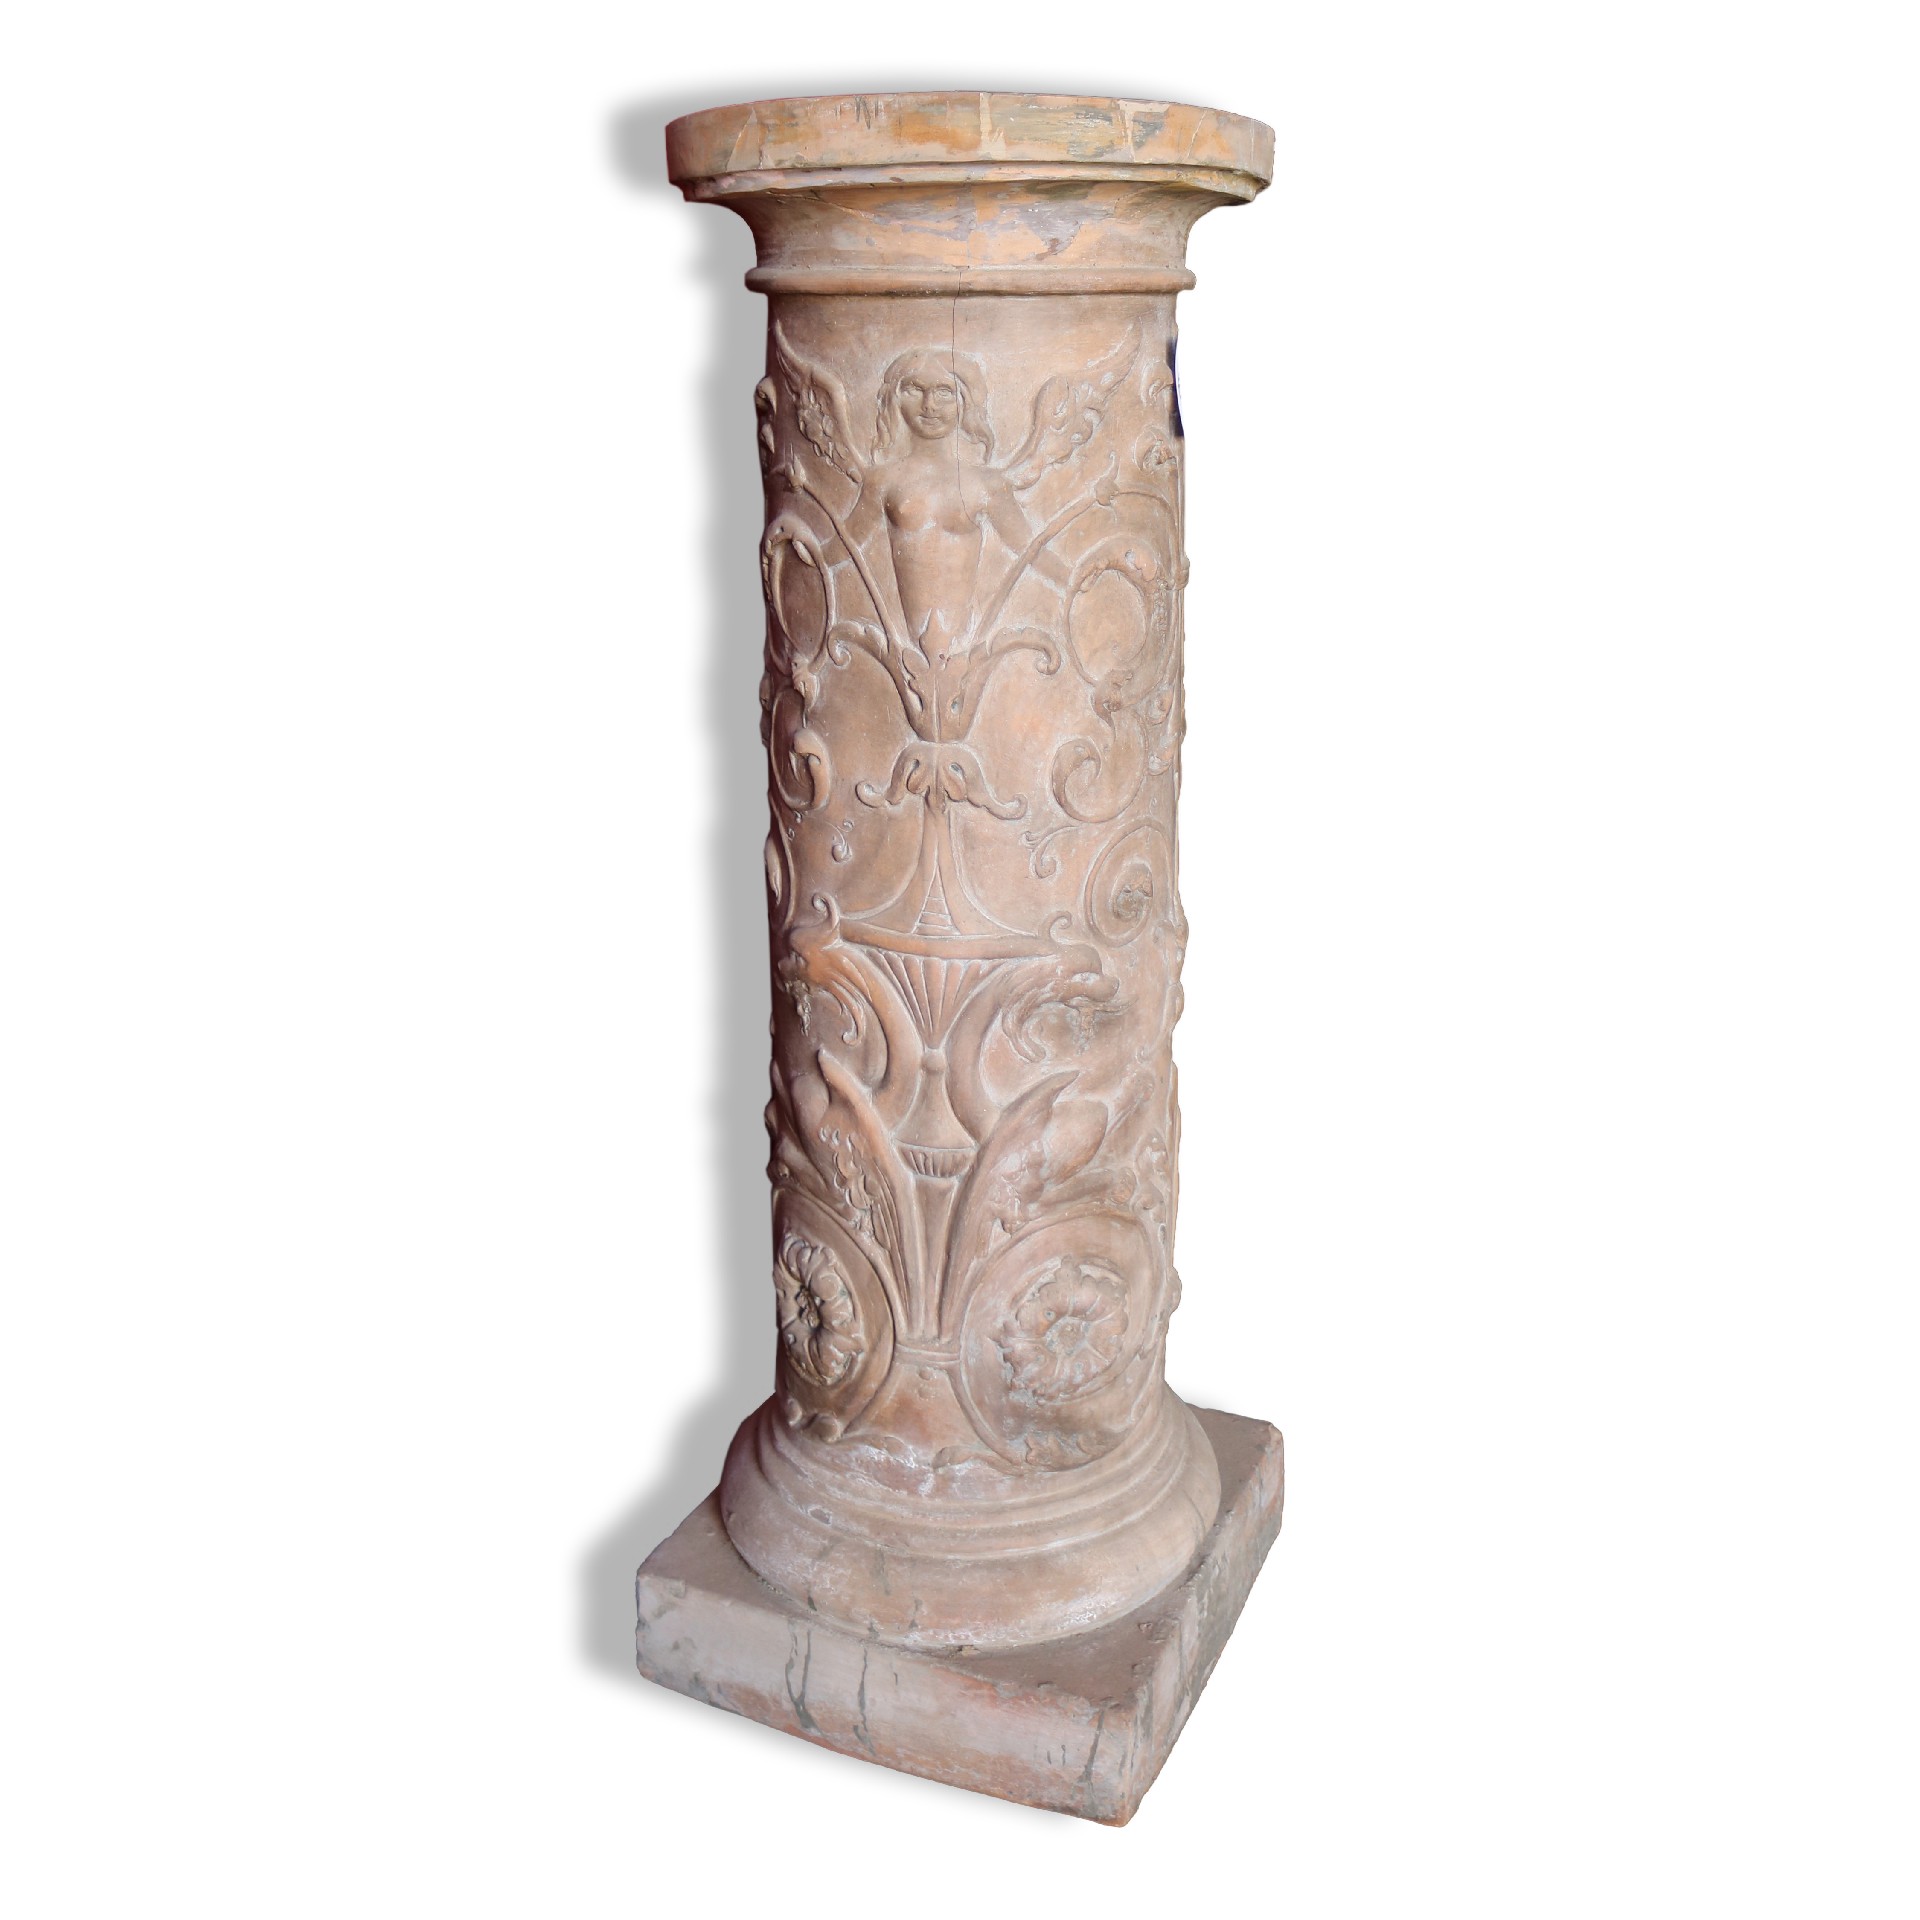 Antica colonna in terracotta. - Colonne antiche - Architettura - Prodotti - Antichità Fiorillo